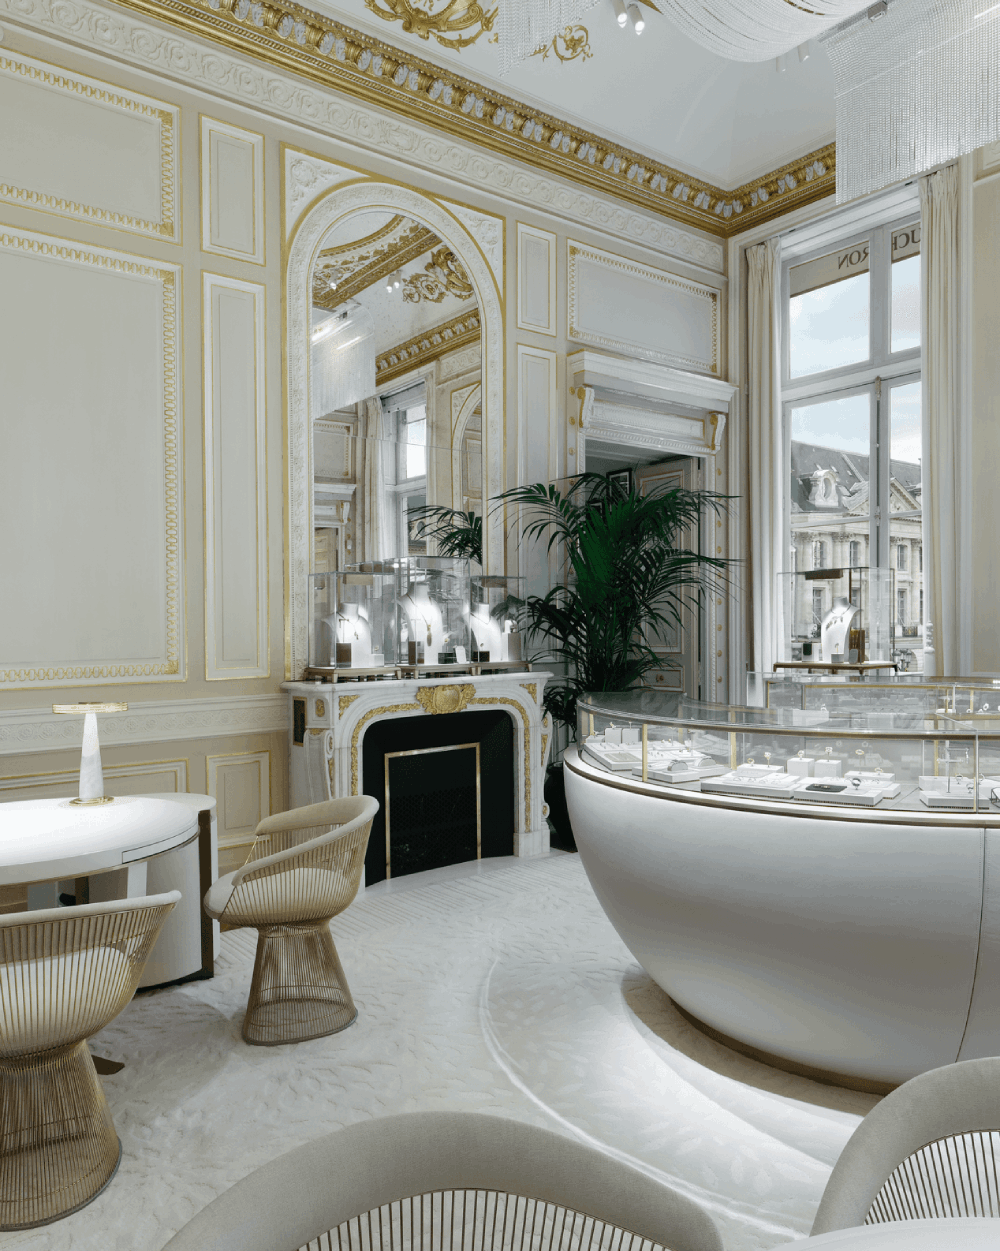 The Salon des Fiancés (The Bridal Room) – second floor